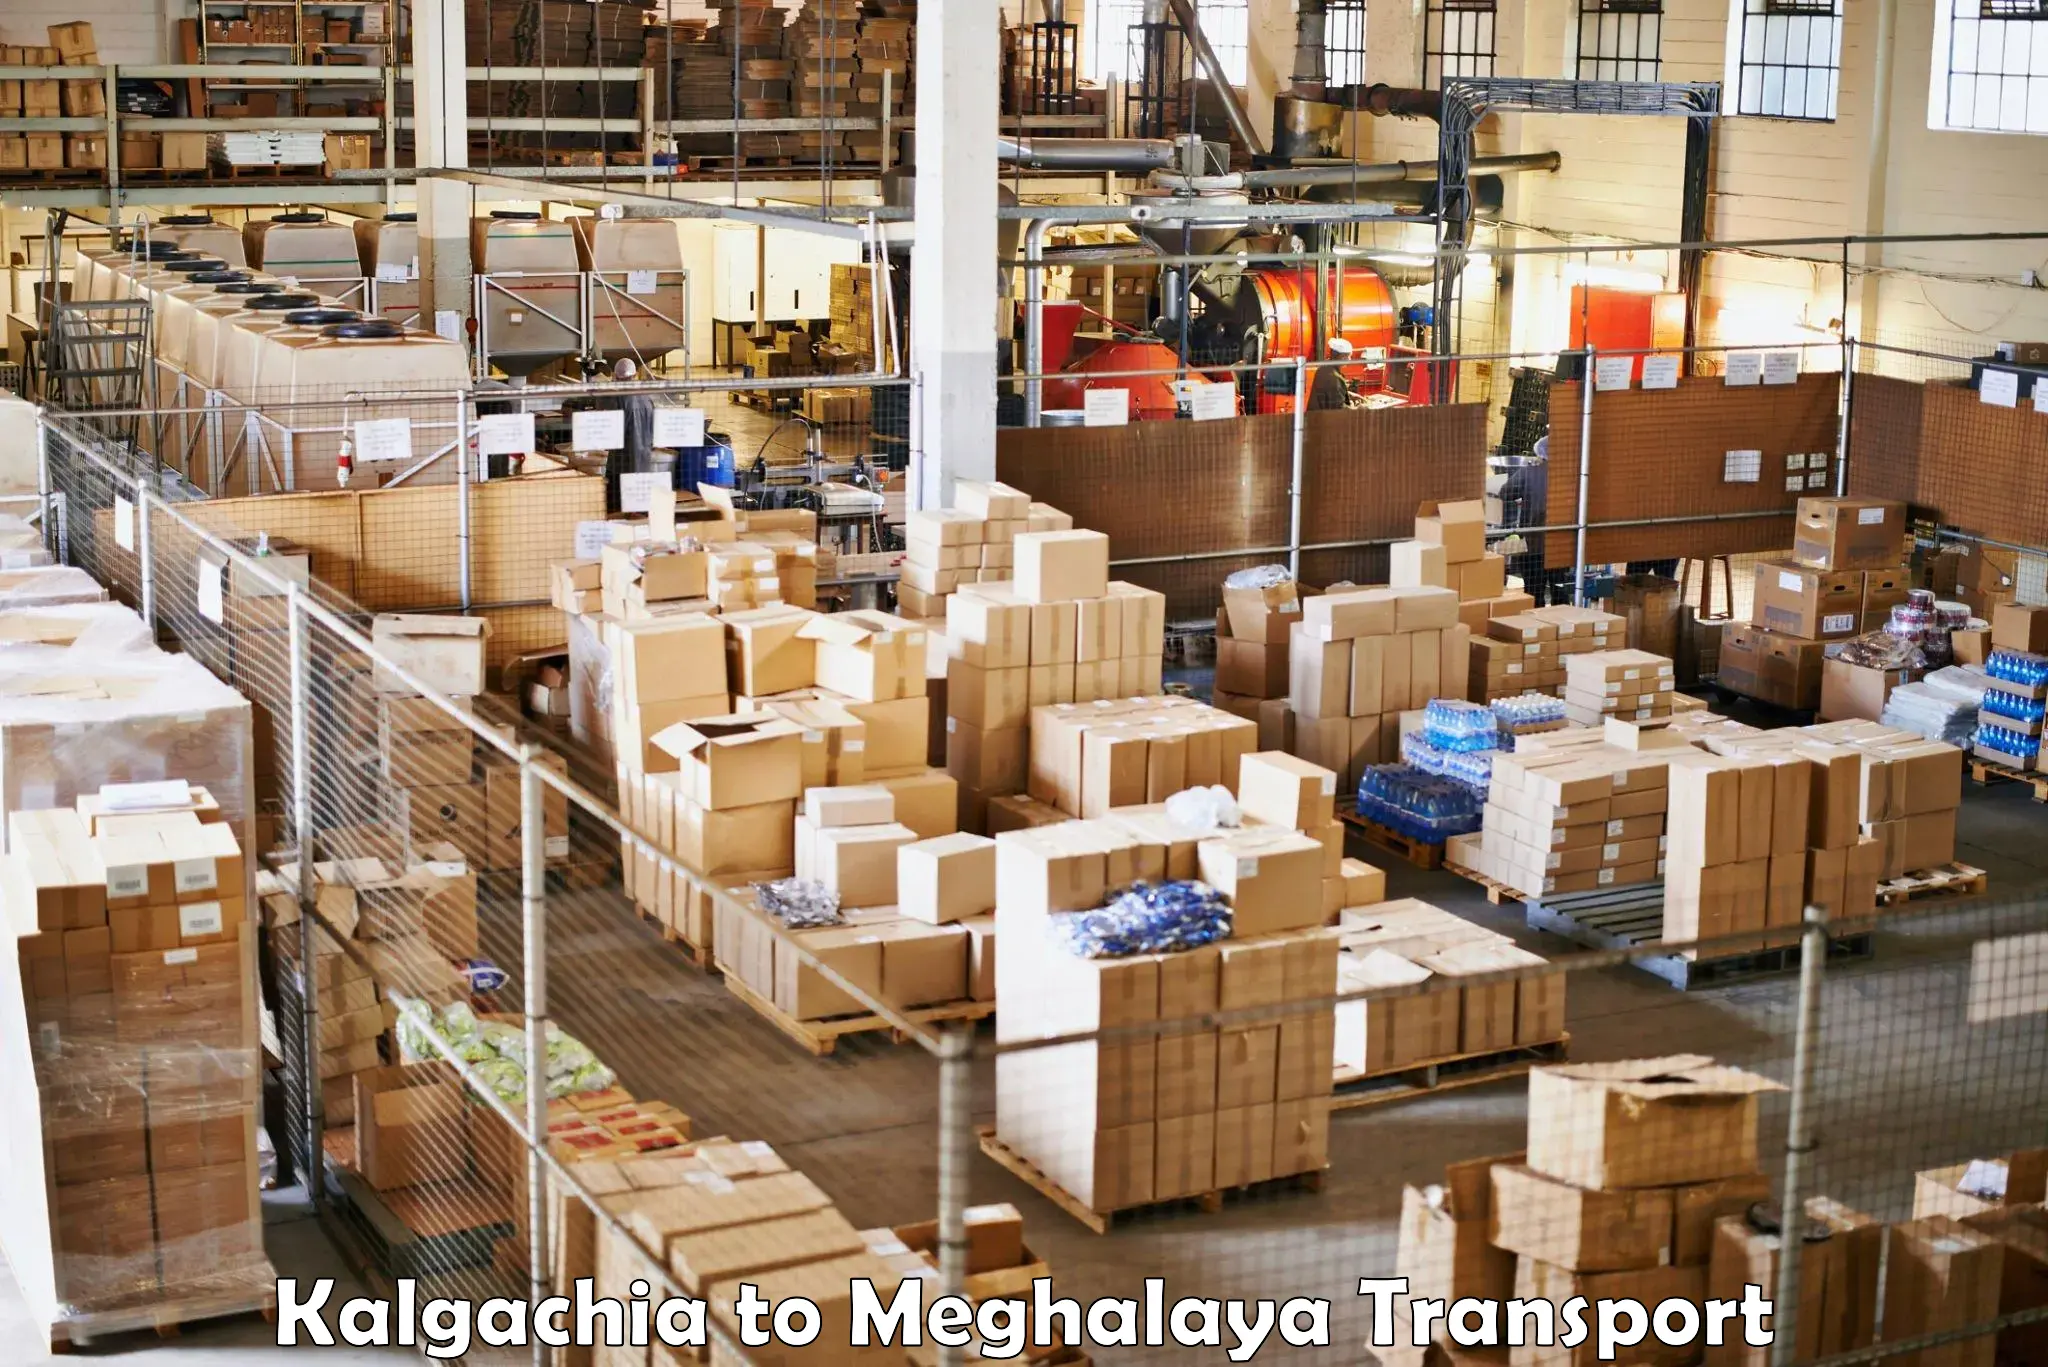 Commercial transport service Kalgachia to Jowai